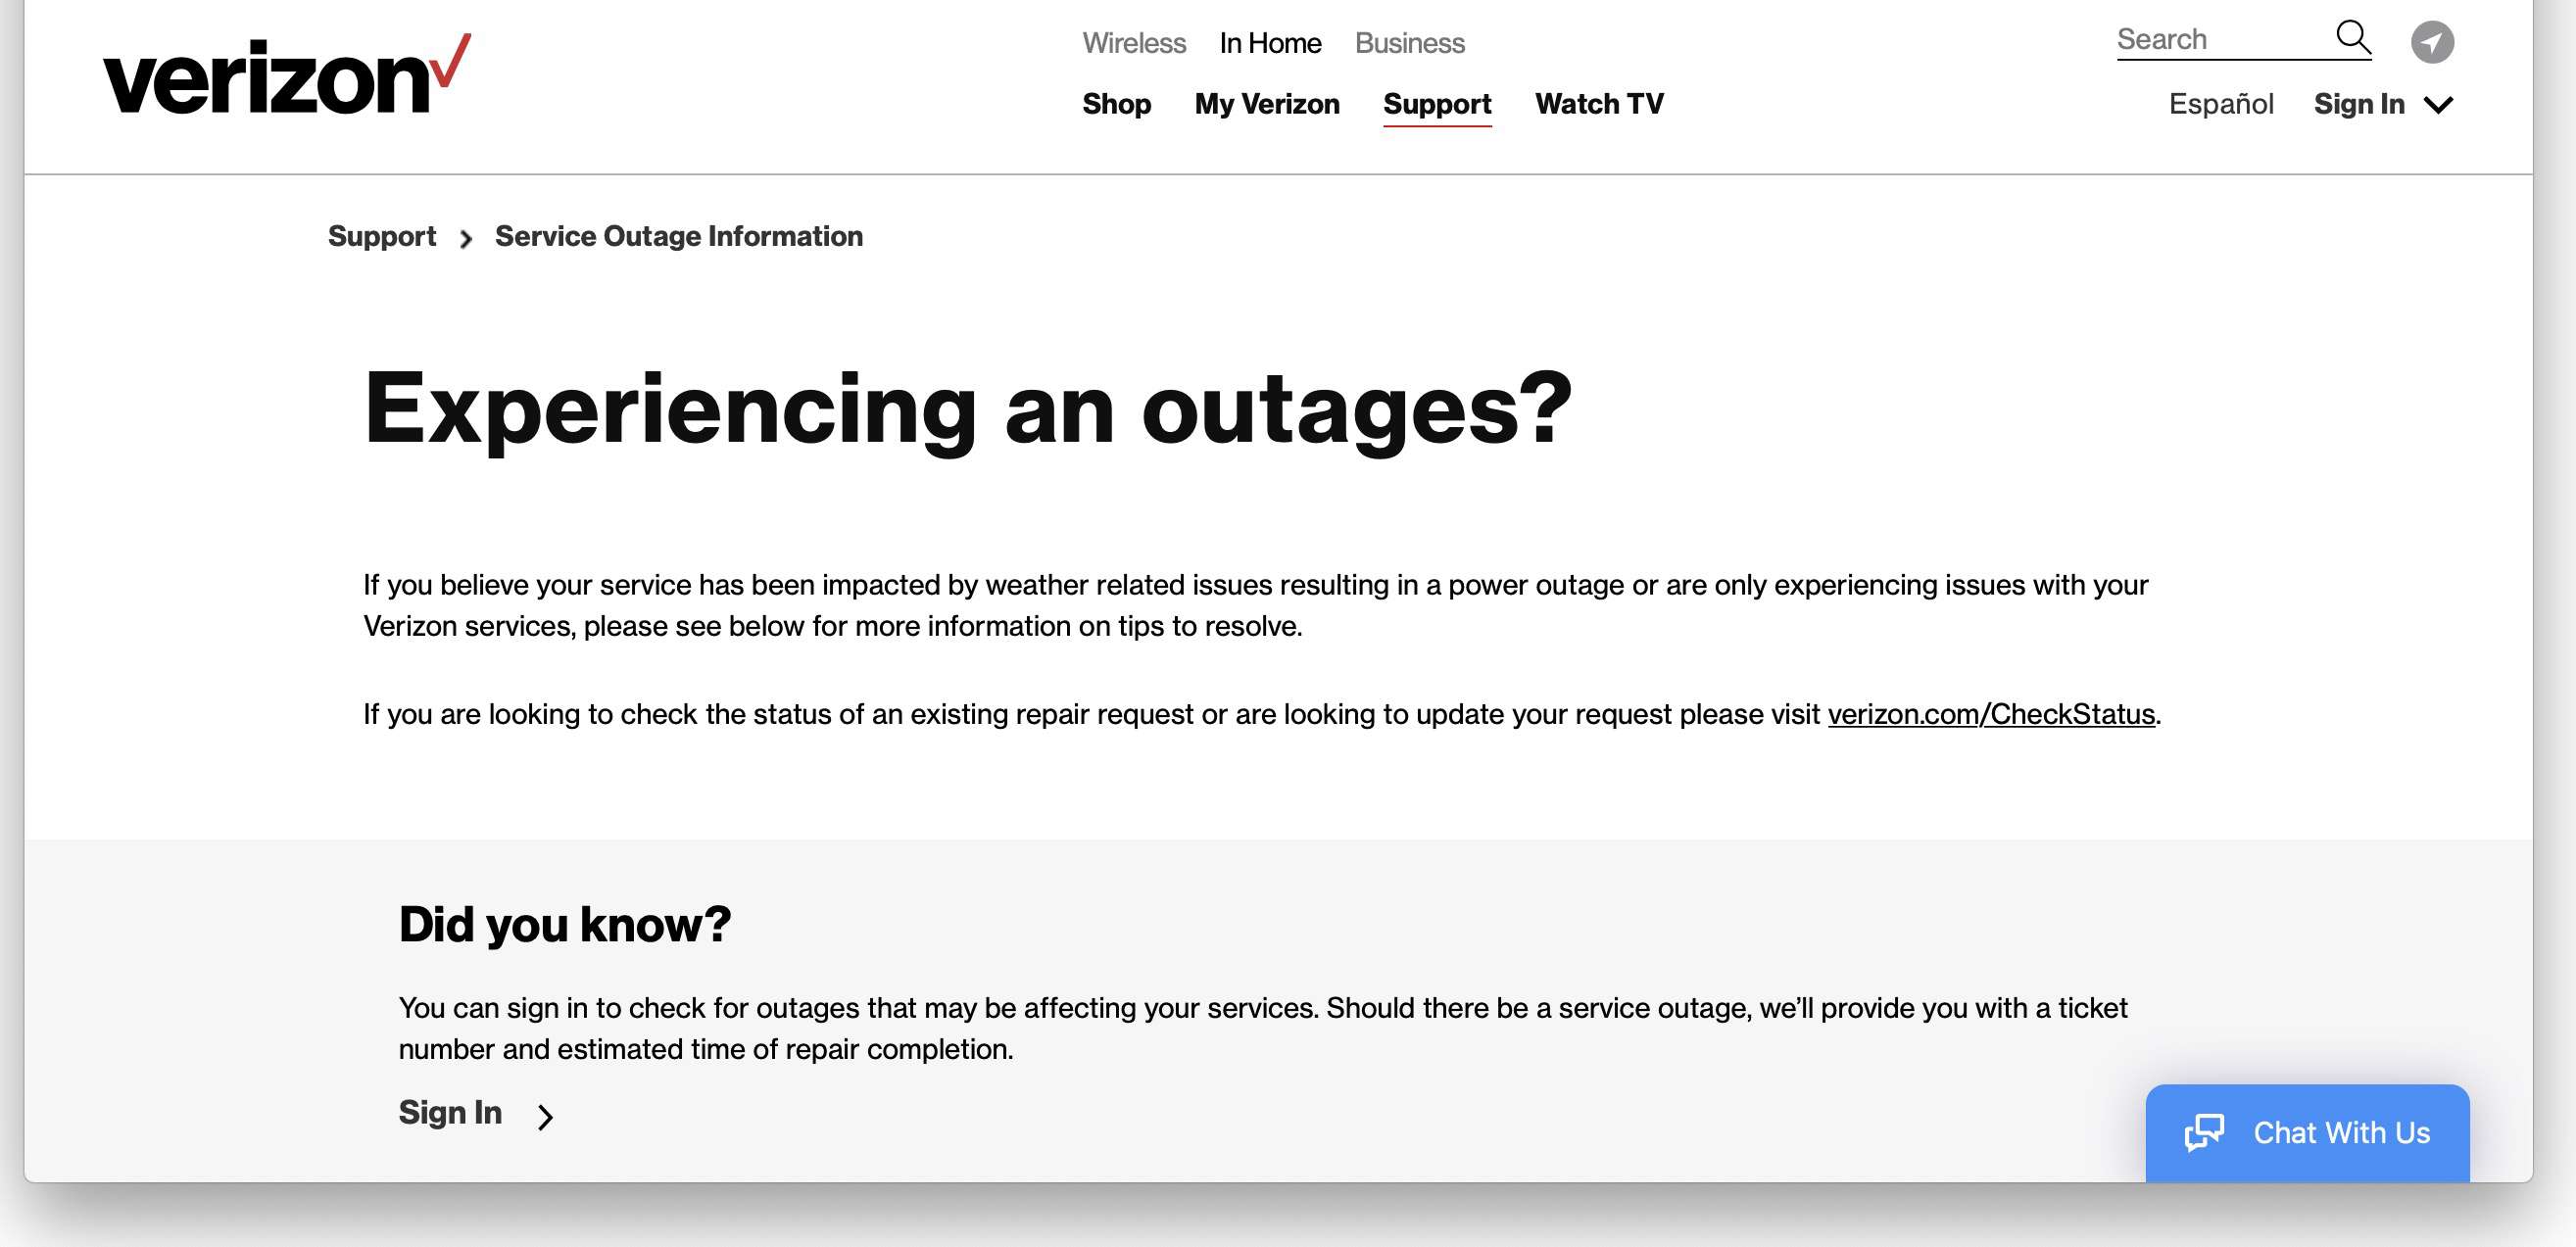 Website met informatie over Verizon Service-uitval